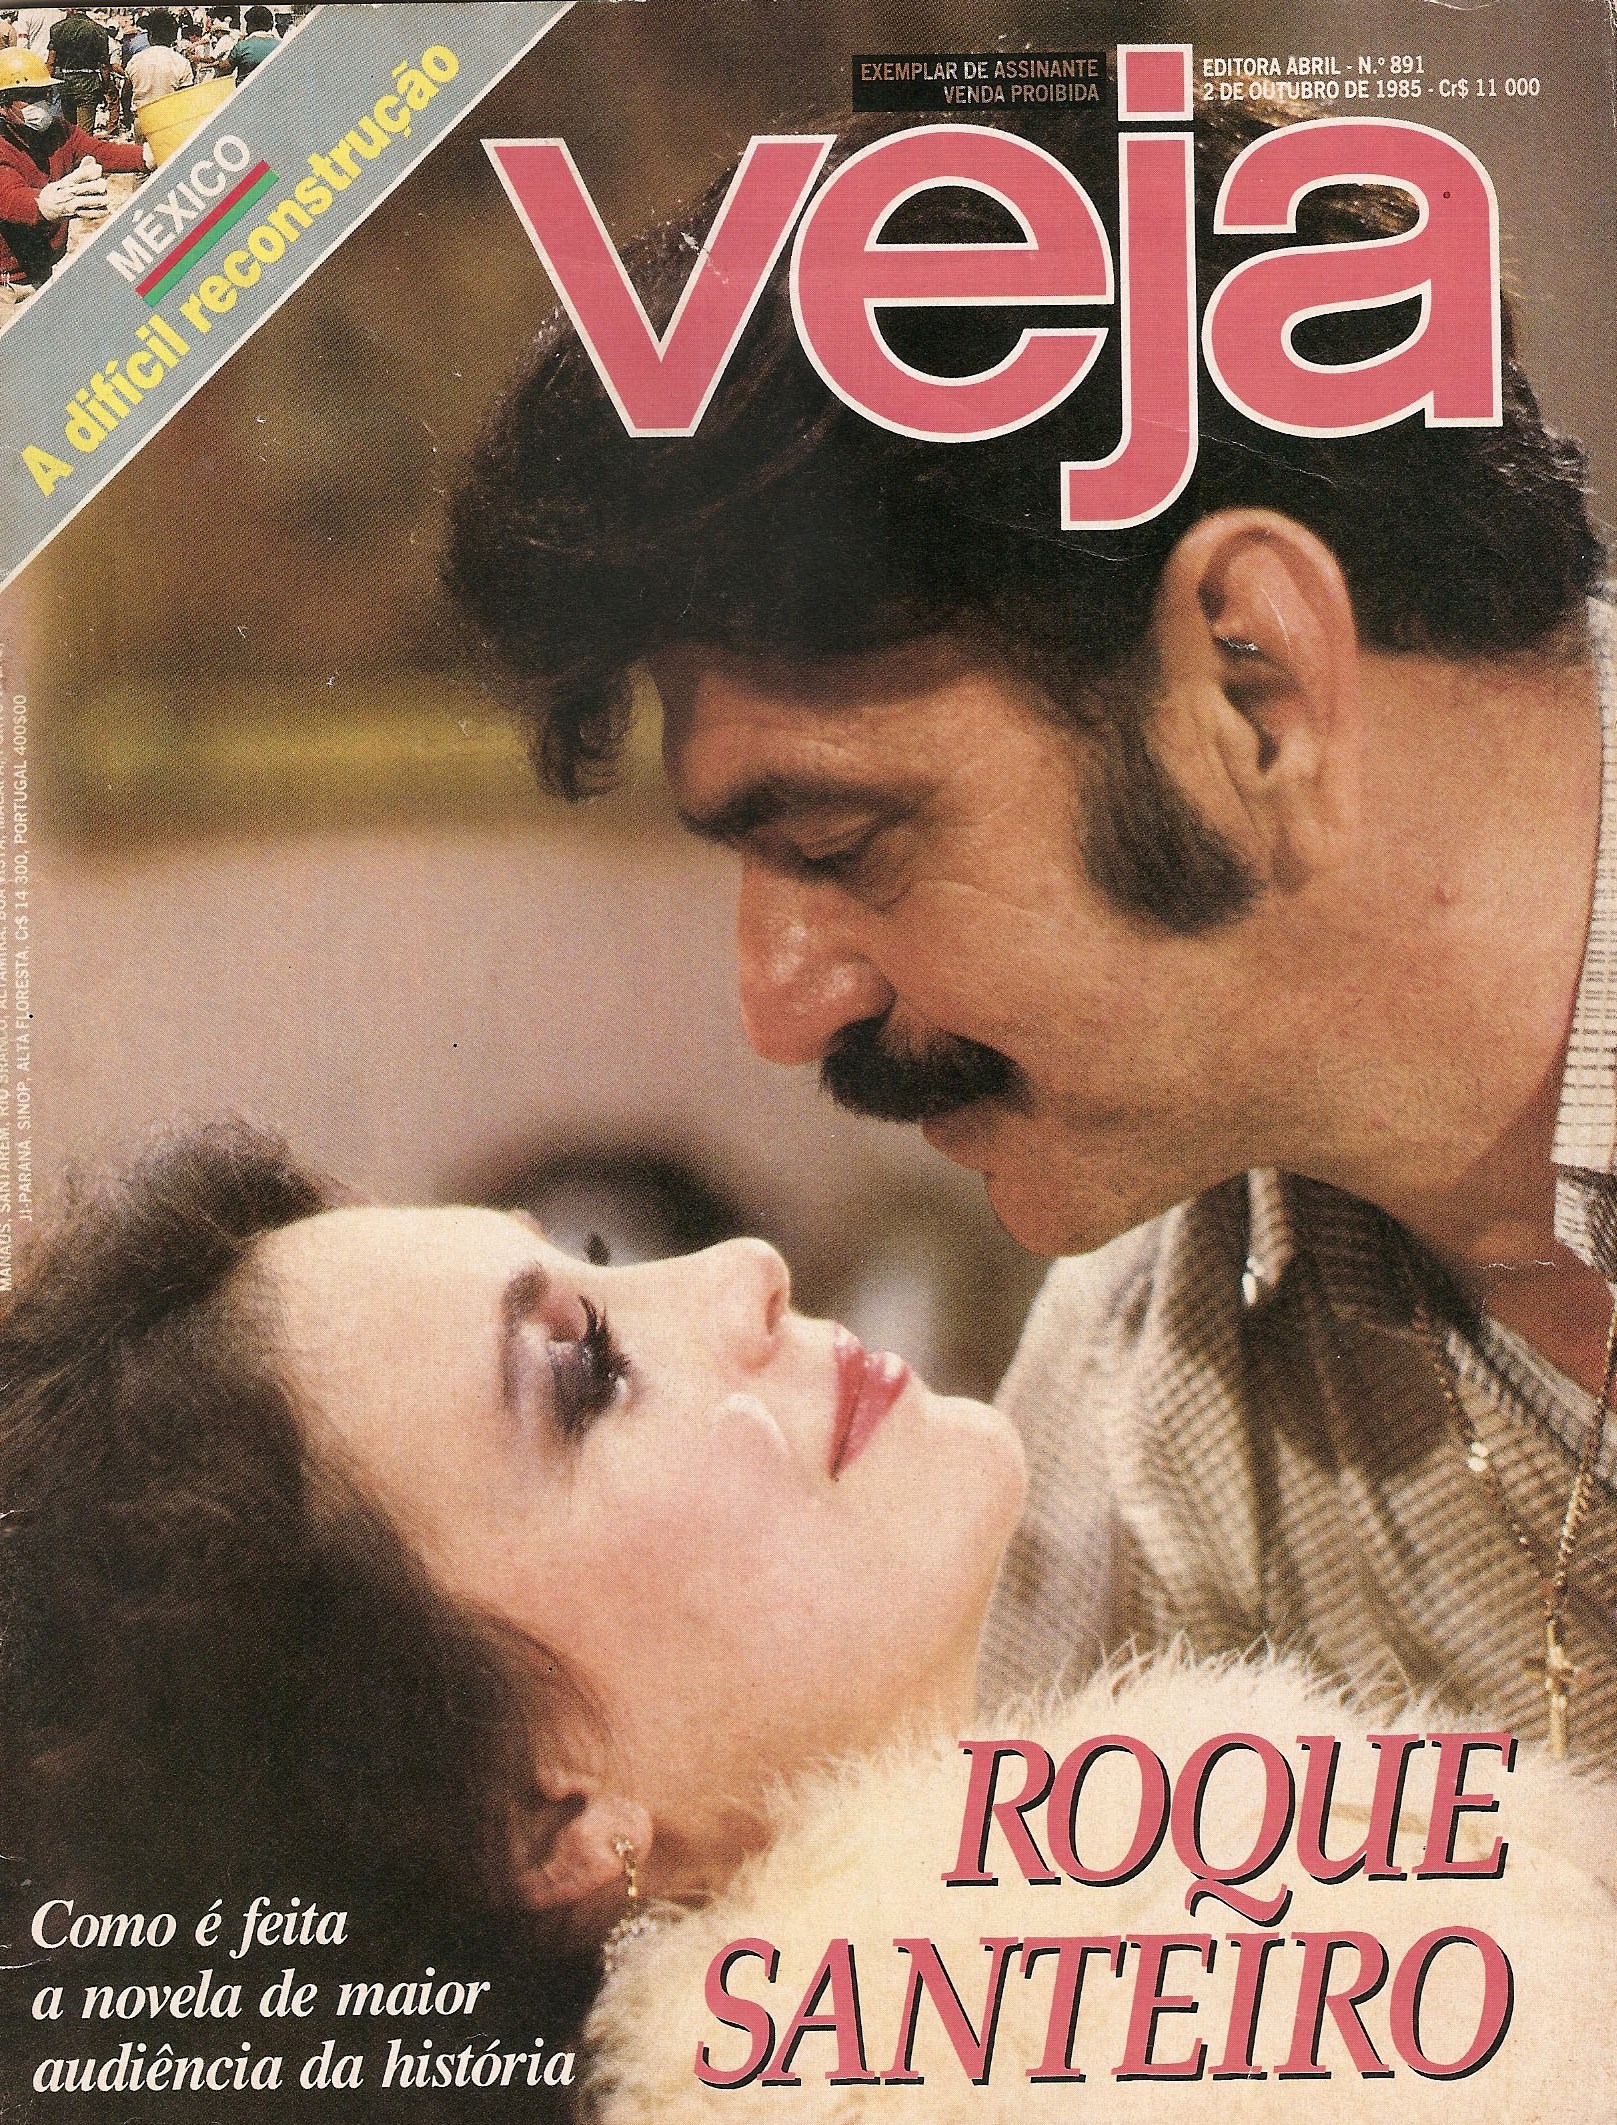 Roque Santeiro - 1975